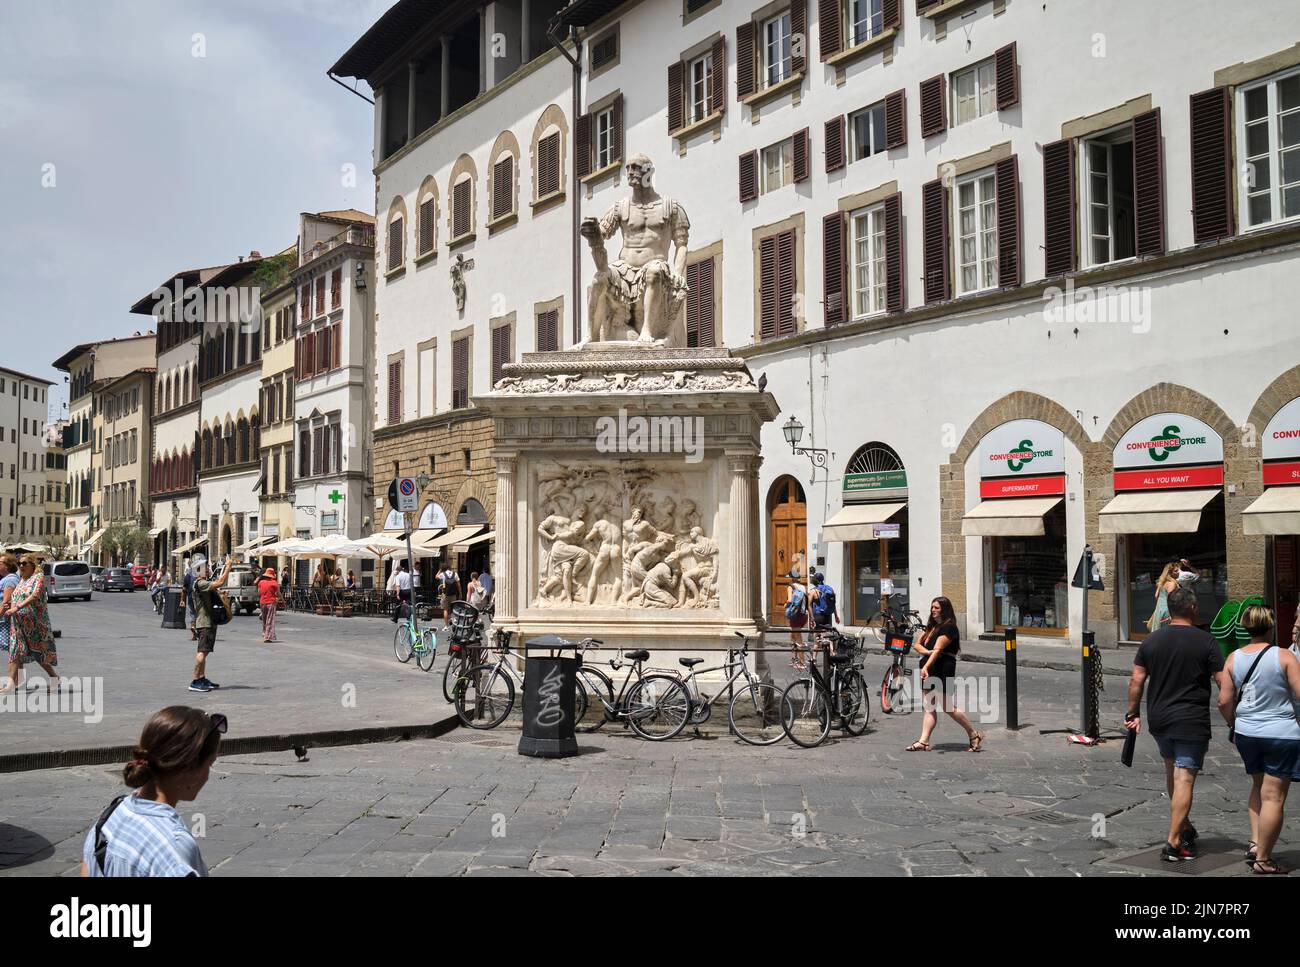 Statue of Giovanni delle Bande Nere (Lodovico de' Medici) by Baccio Bandinelli in the Piazza San Lorenzo Florence Italy Stock Photo